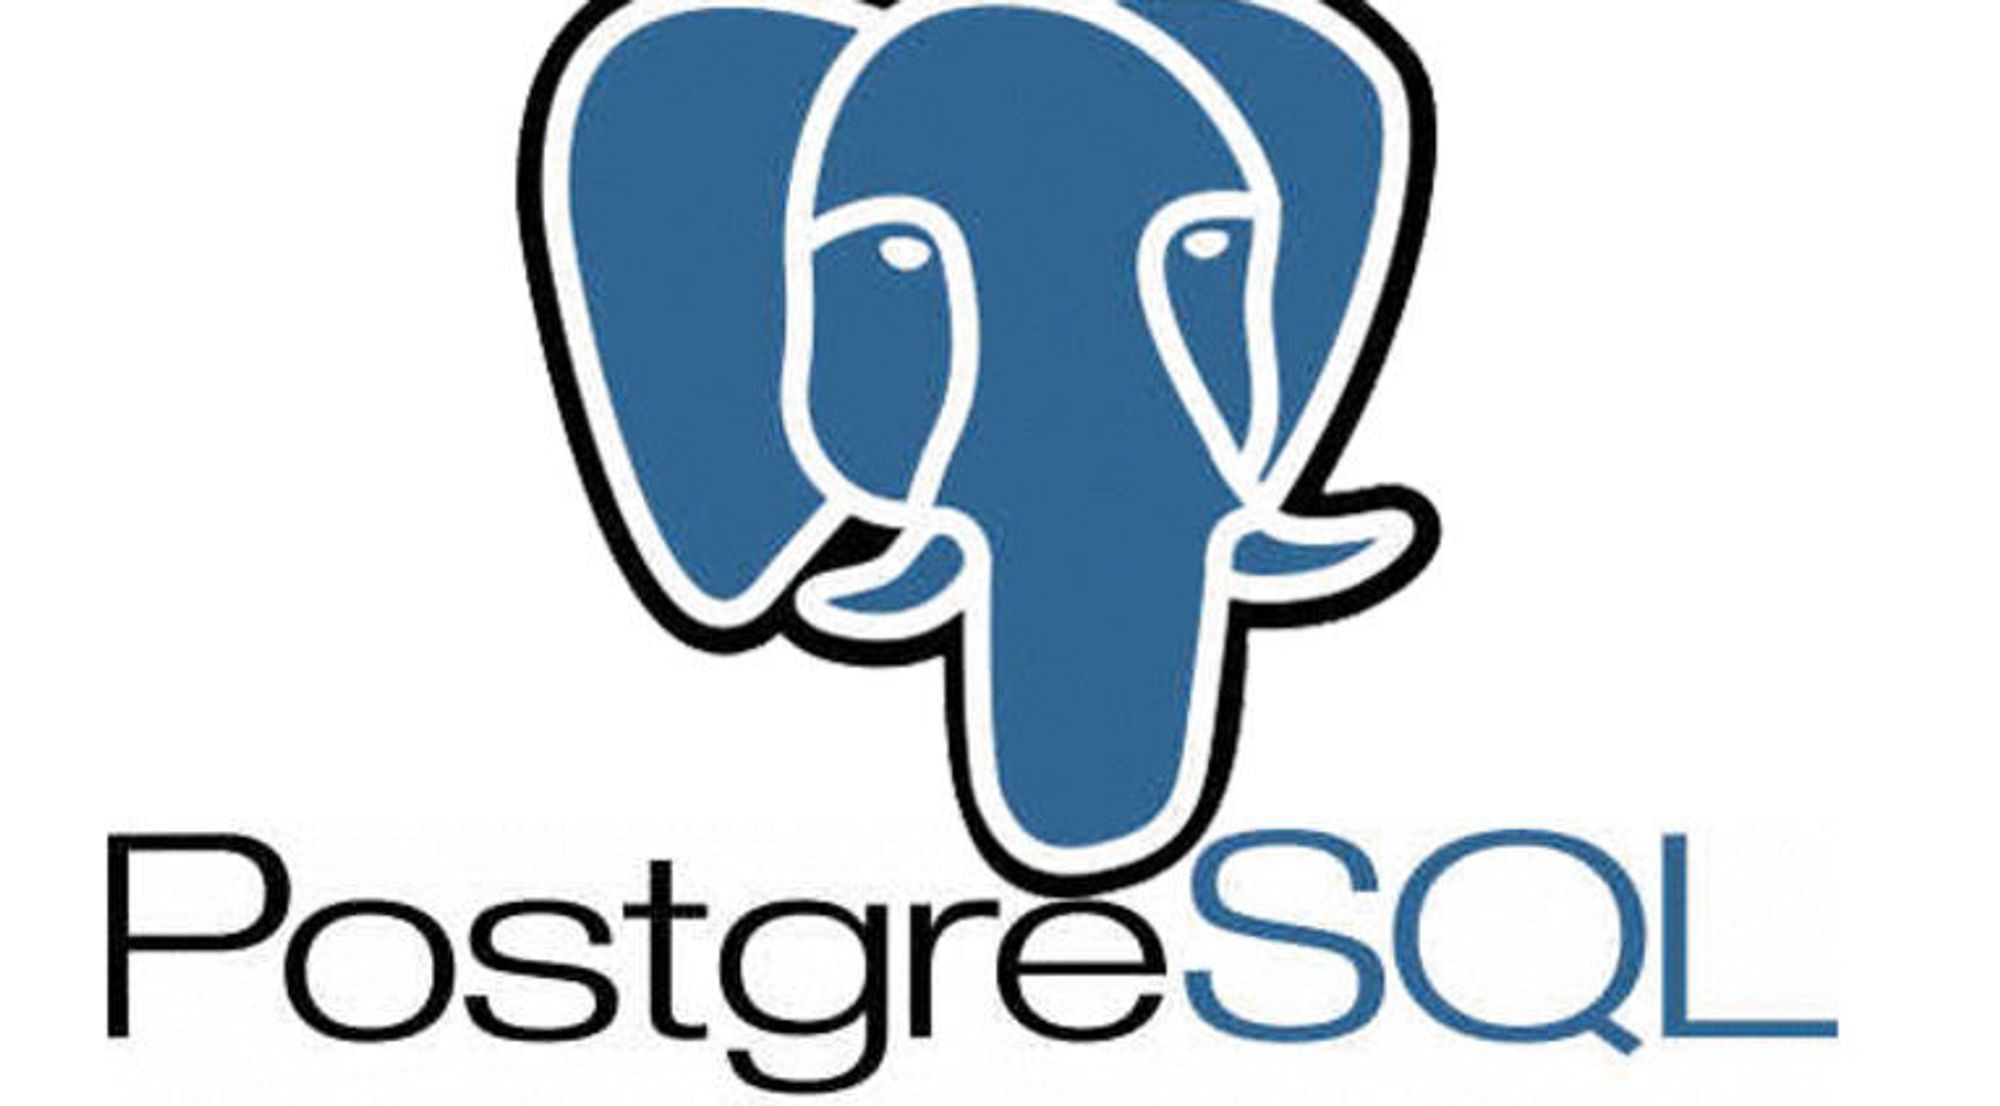 PostgreSQL klar for større oppgaver